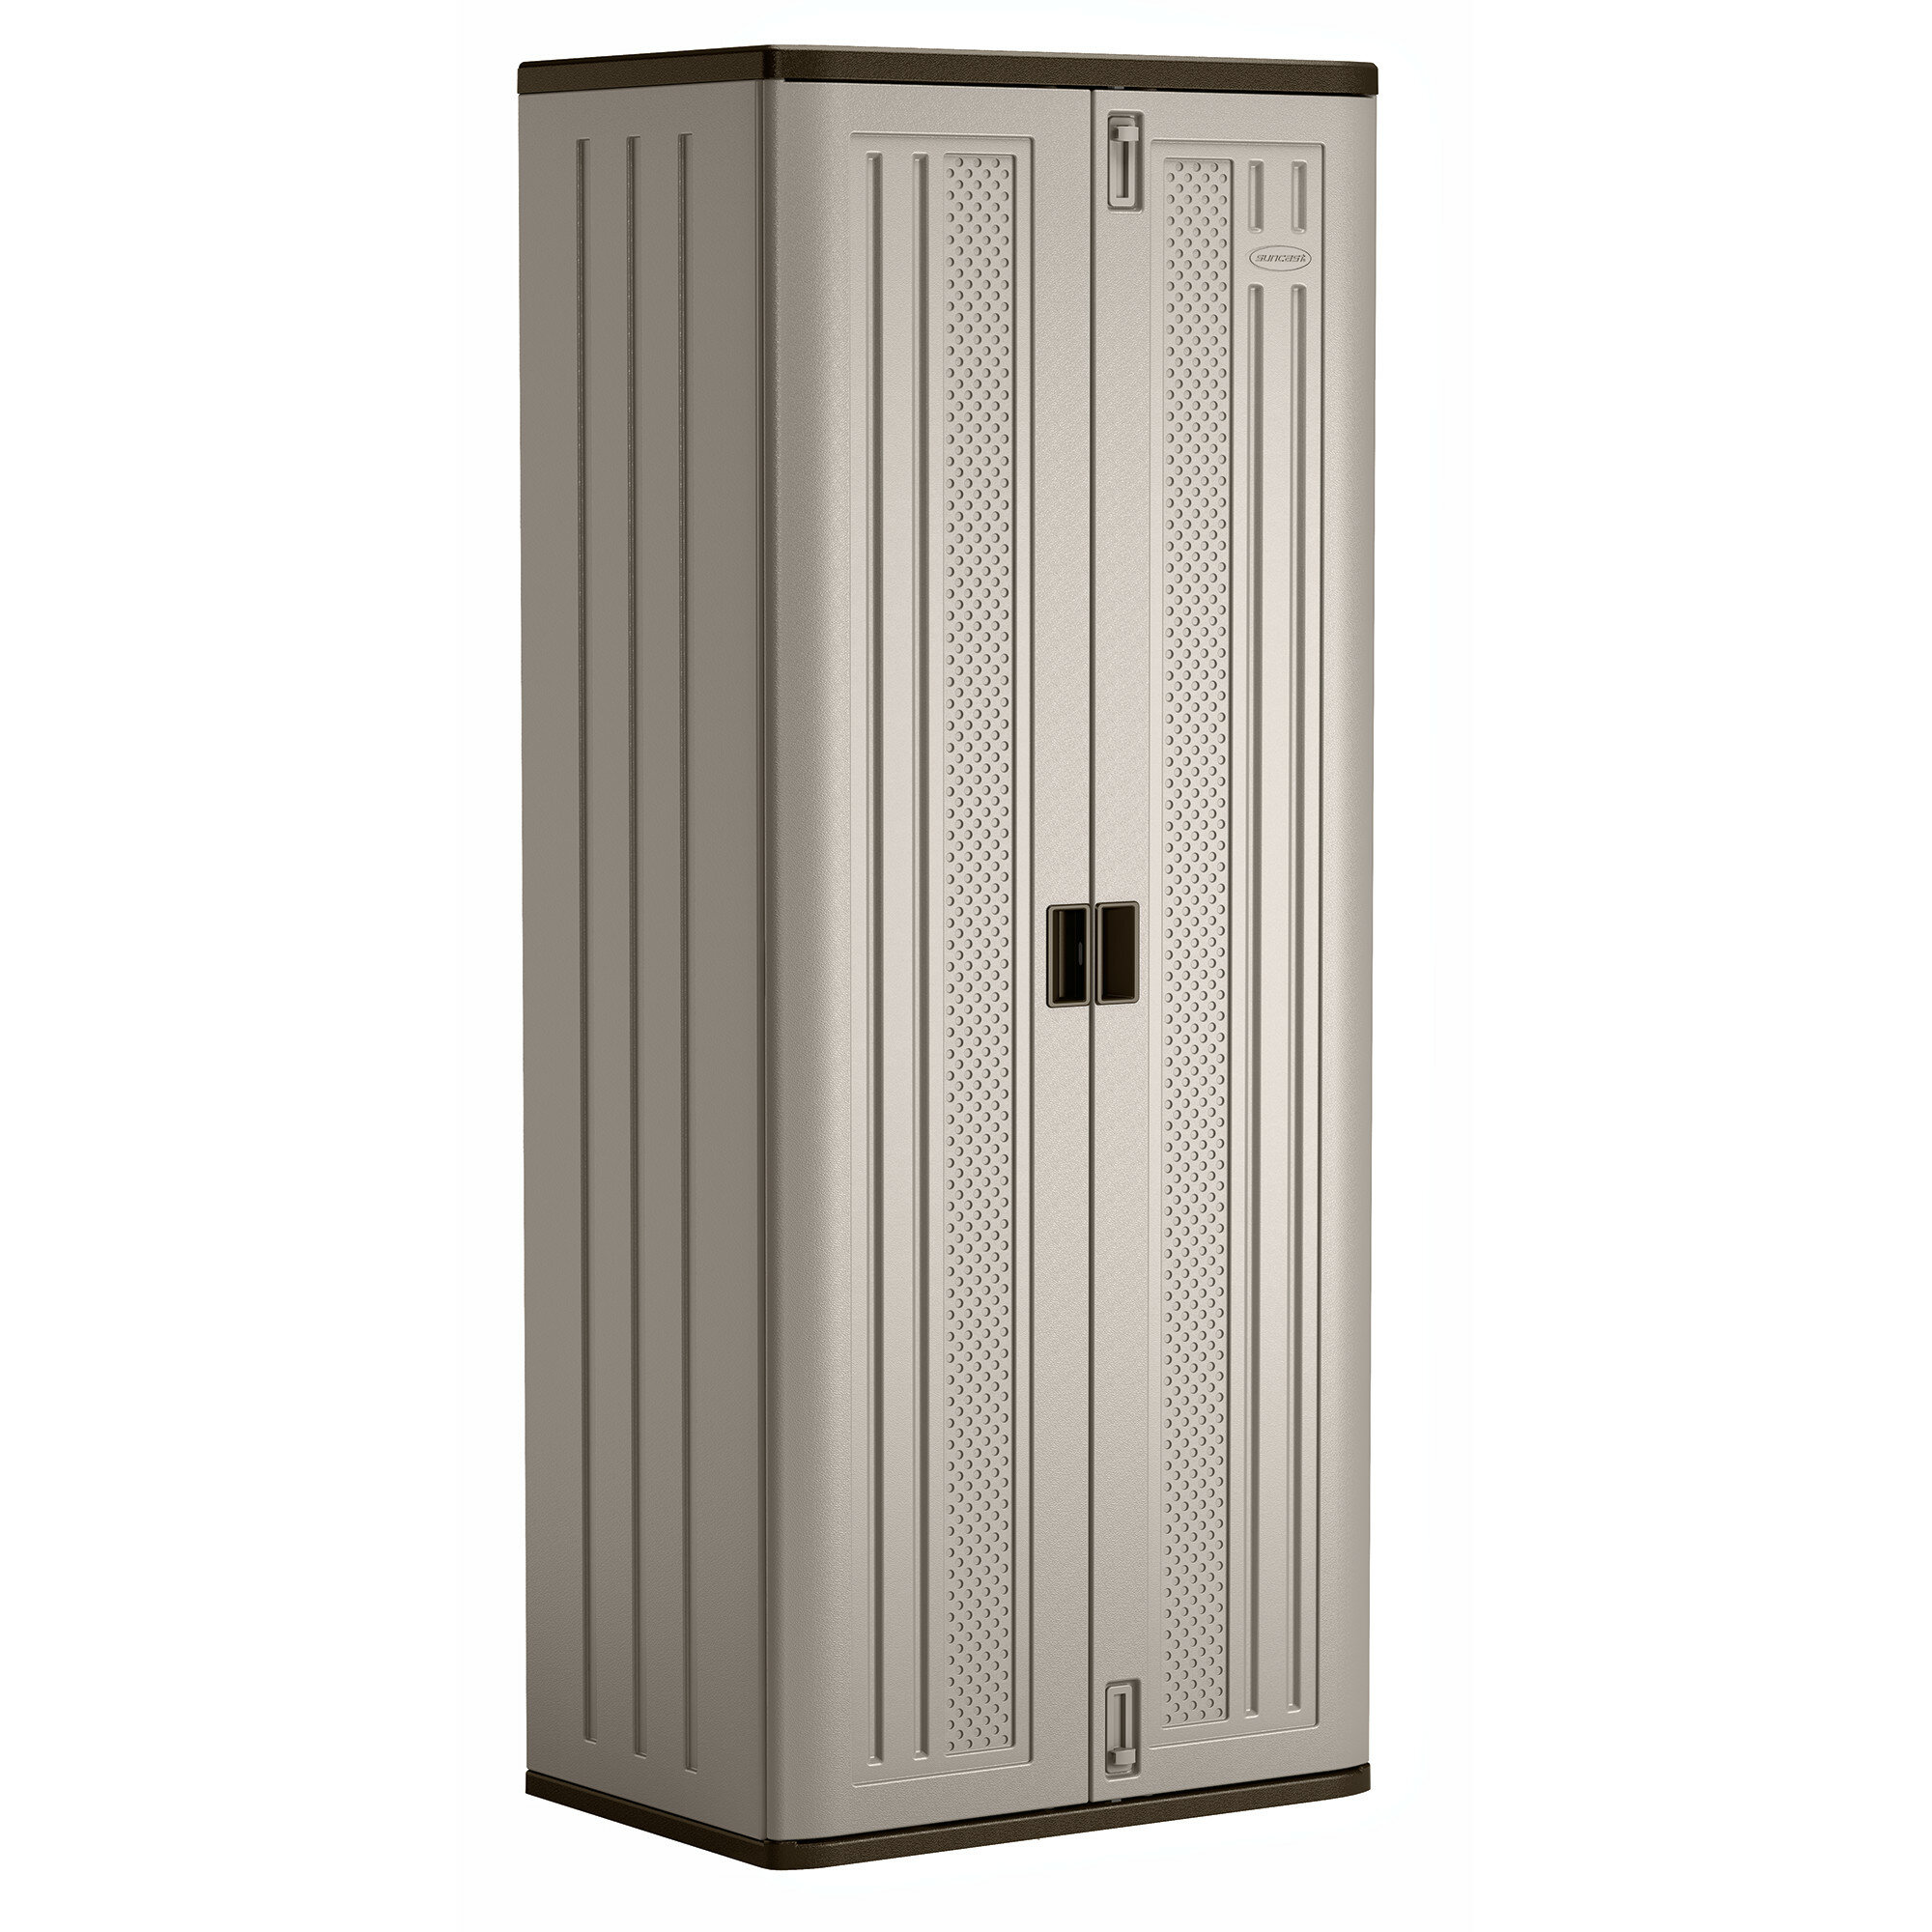 72" H x 30" W x 21" Storage Cabinet